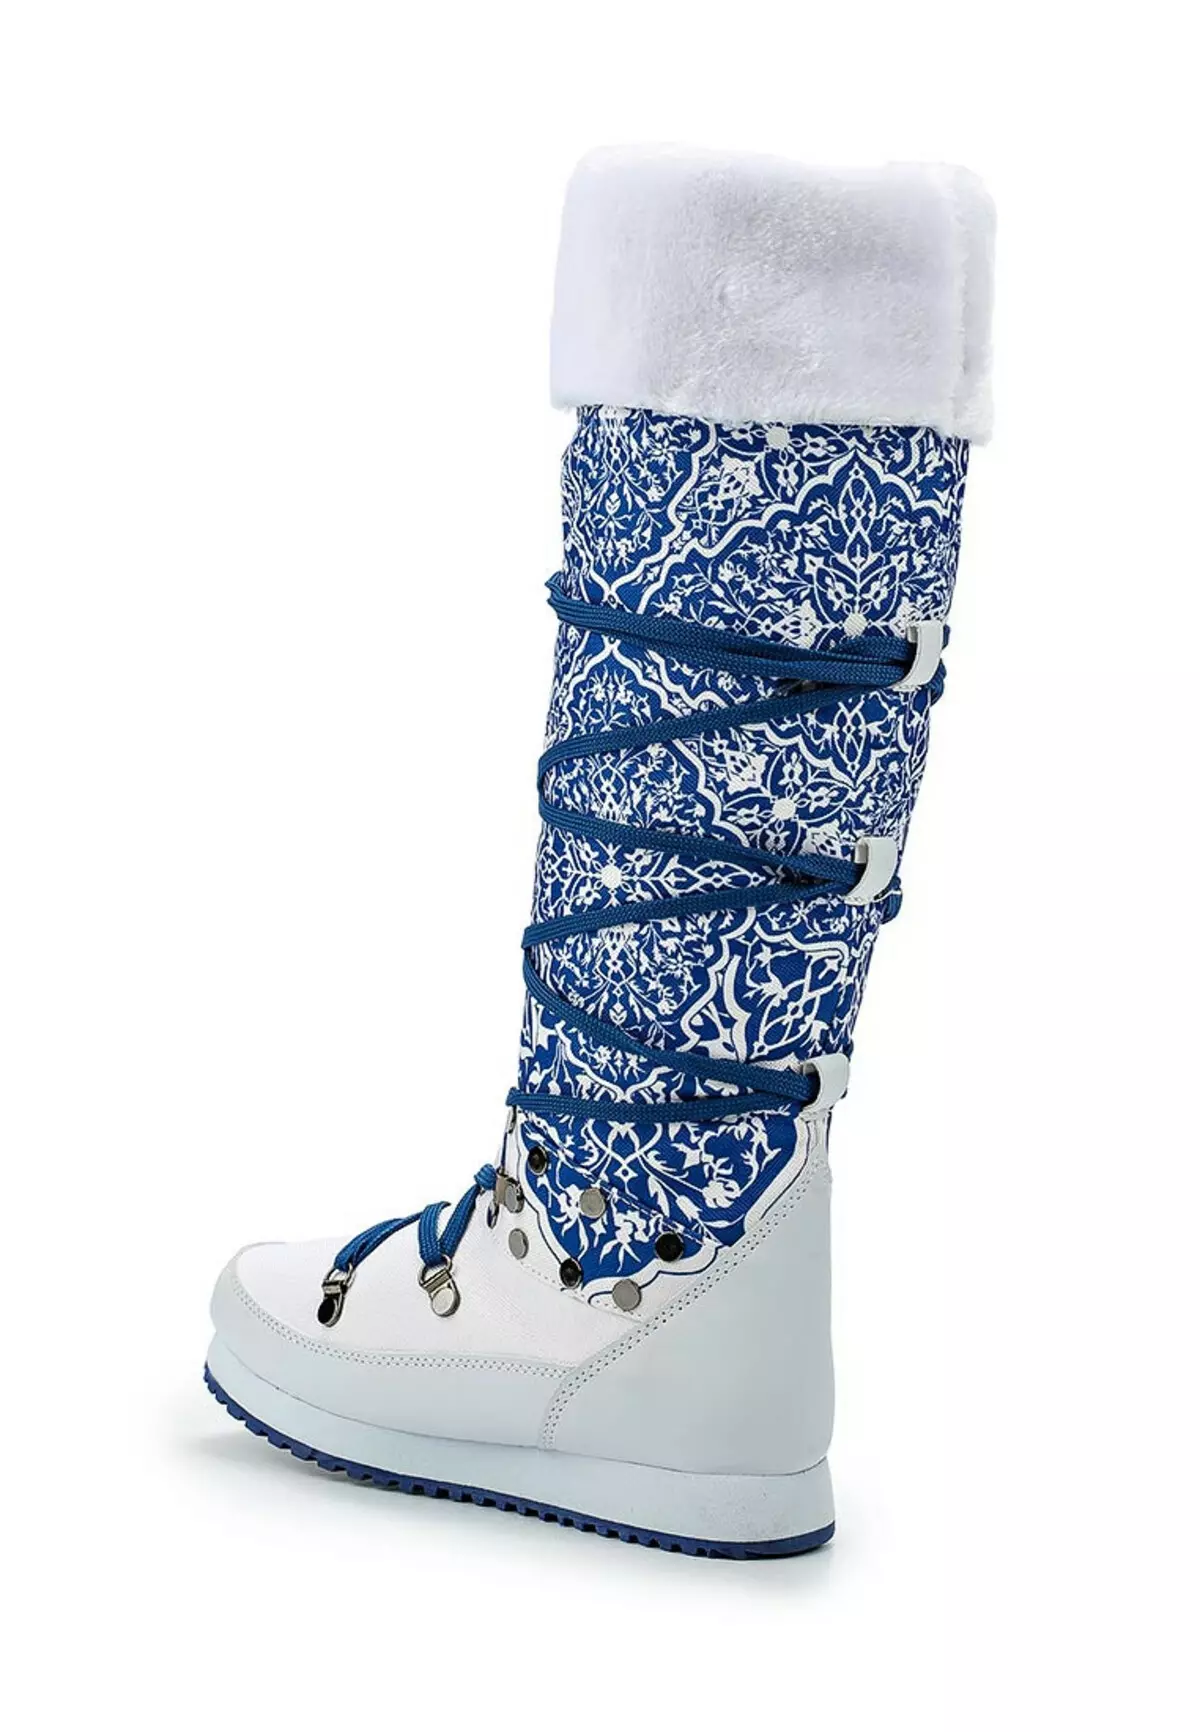 Dutchik King Boots (58 รูป): รุ่นฤดูหนาวของผู้หญิงจาก King Buds, ความคิดเห็นเกี่ยวกับรองเท้าบูทเยอรมัน 2104_27